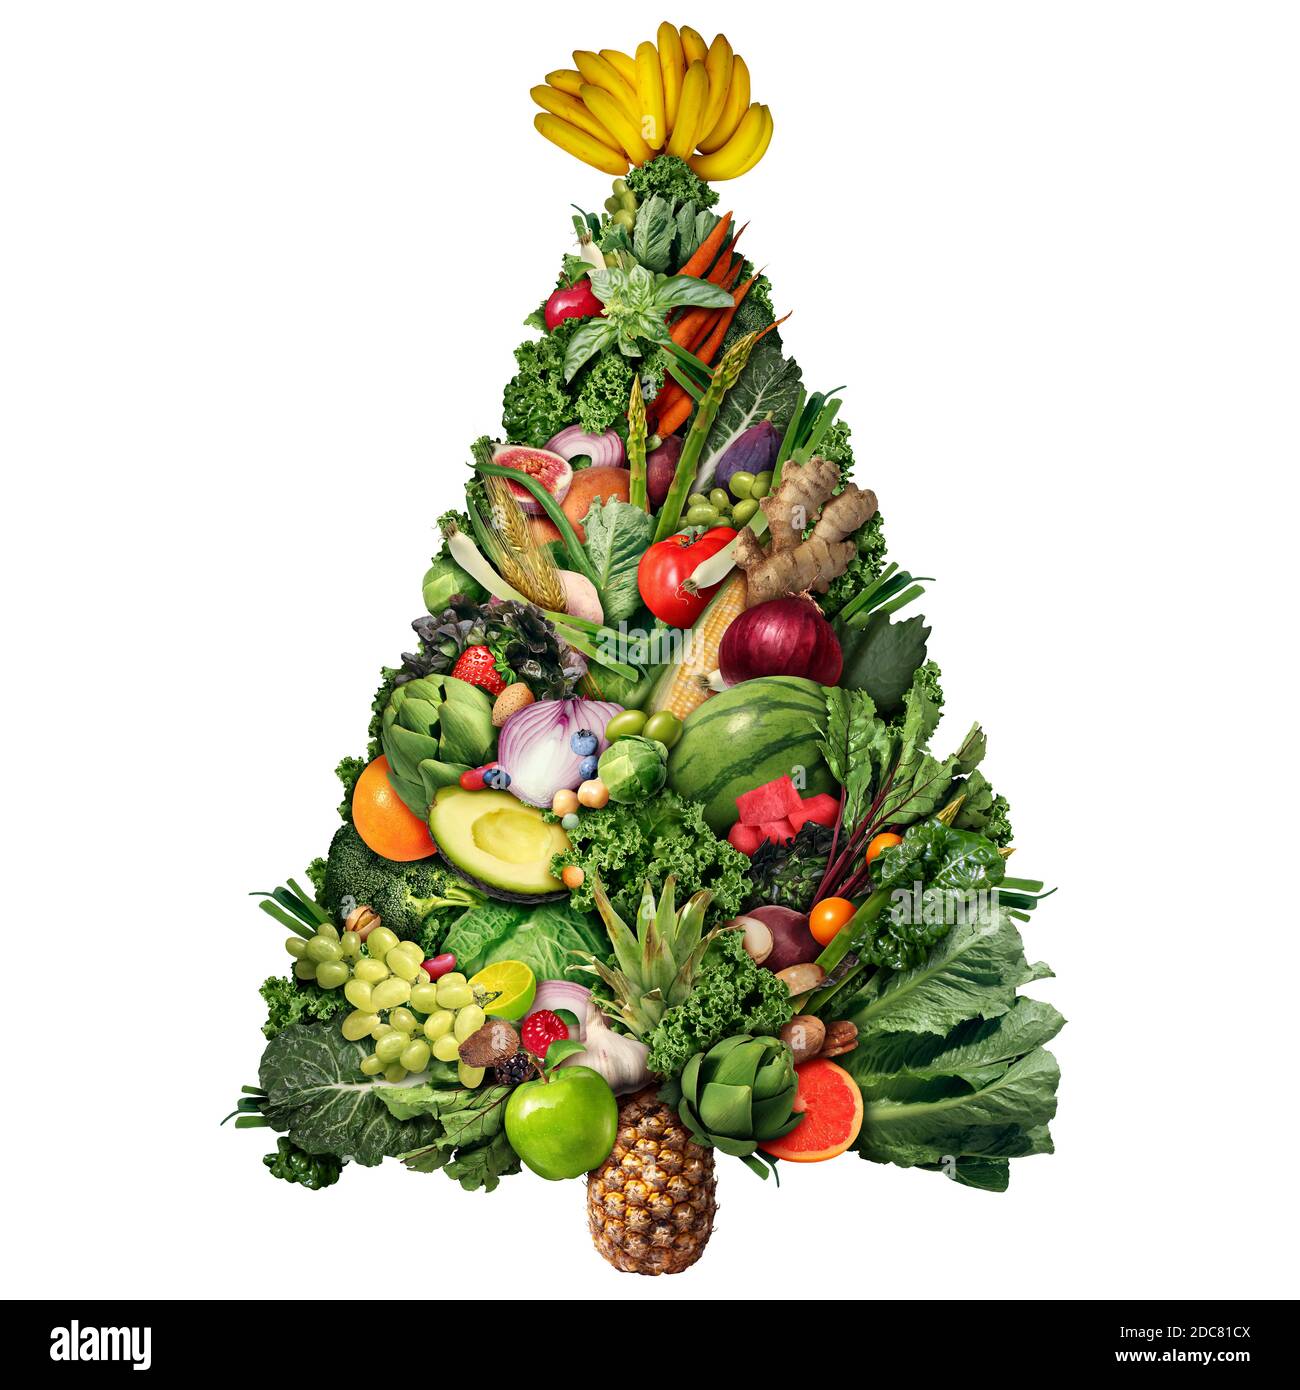 Gesundes Weihnachtsessen Symbol und gesundheitliche Vorteile des Essens von Obst und Gemüse mit Nüssen als lustige festliche Weihnachten geformt. Stockfoto